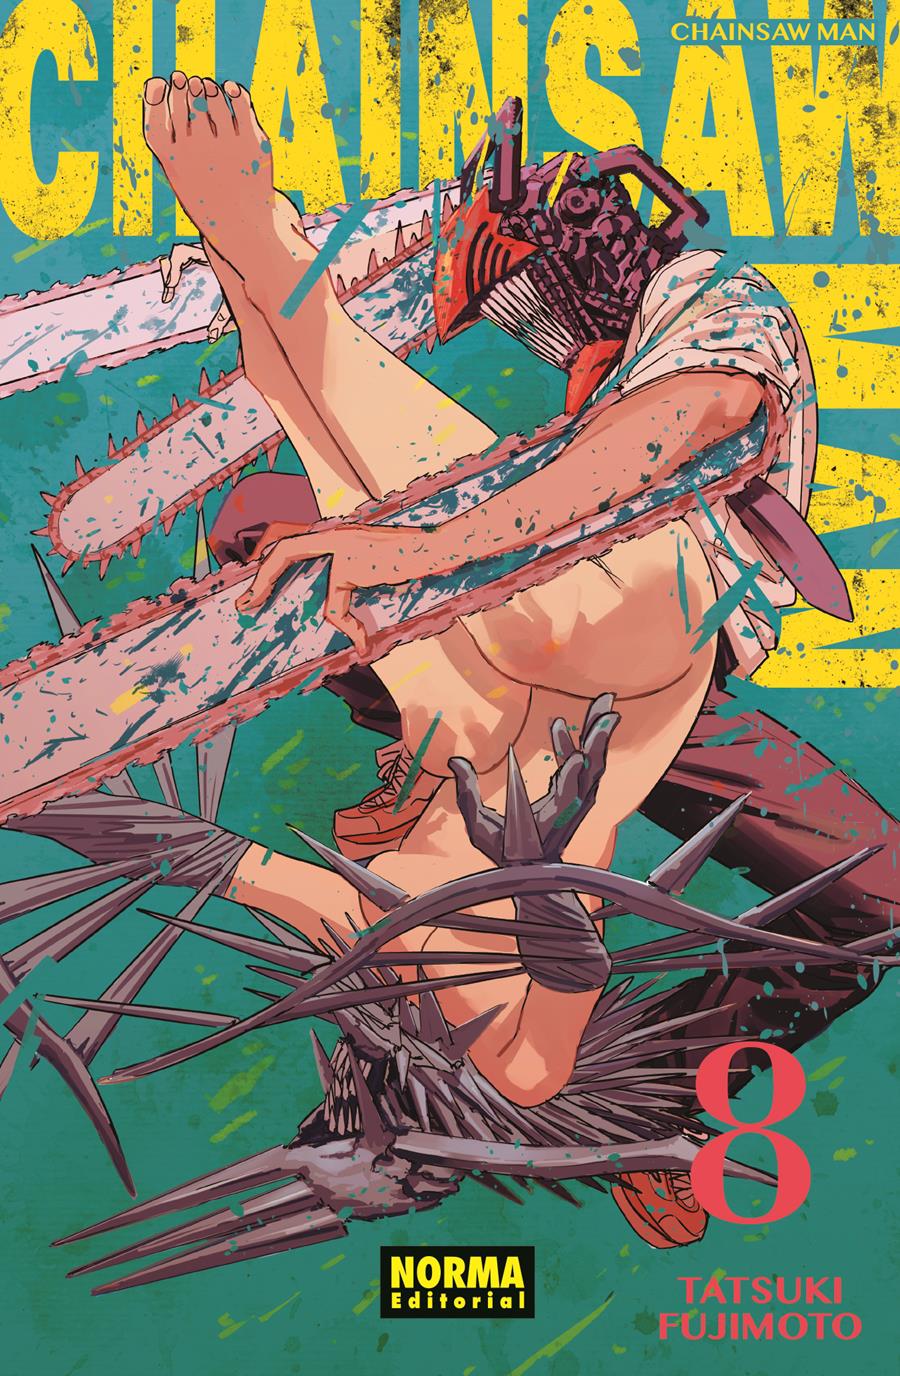 Chainsaw man 08 | N0921-NOR26 | Tatsuki Fujimoto | Terra de Còmic - Tu tienda de cómics online especializada en cómics, manga y merchandising